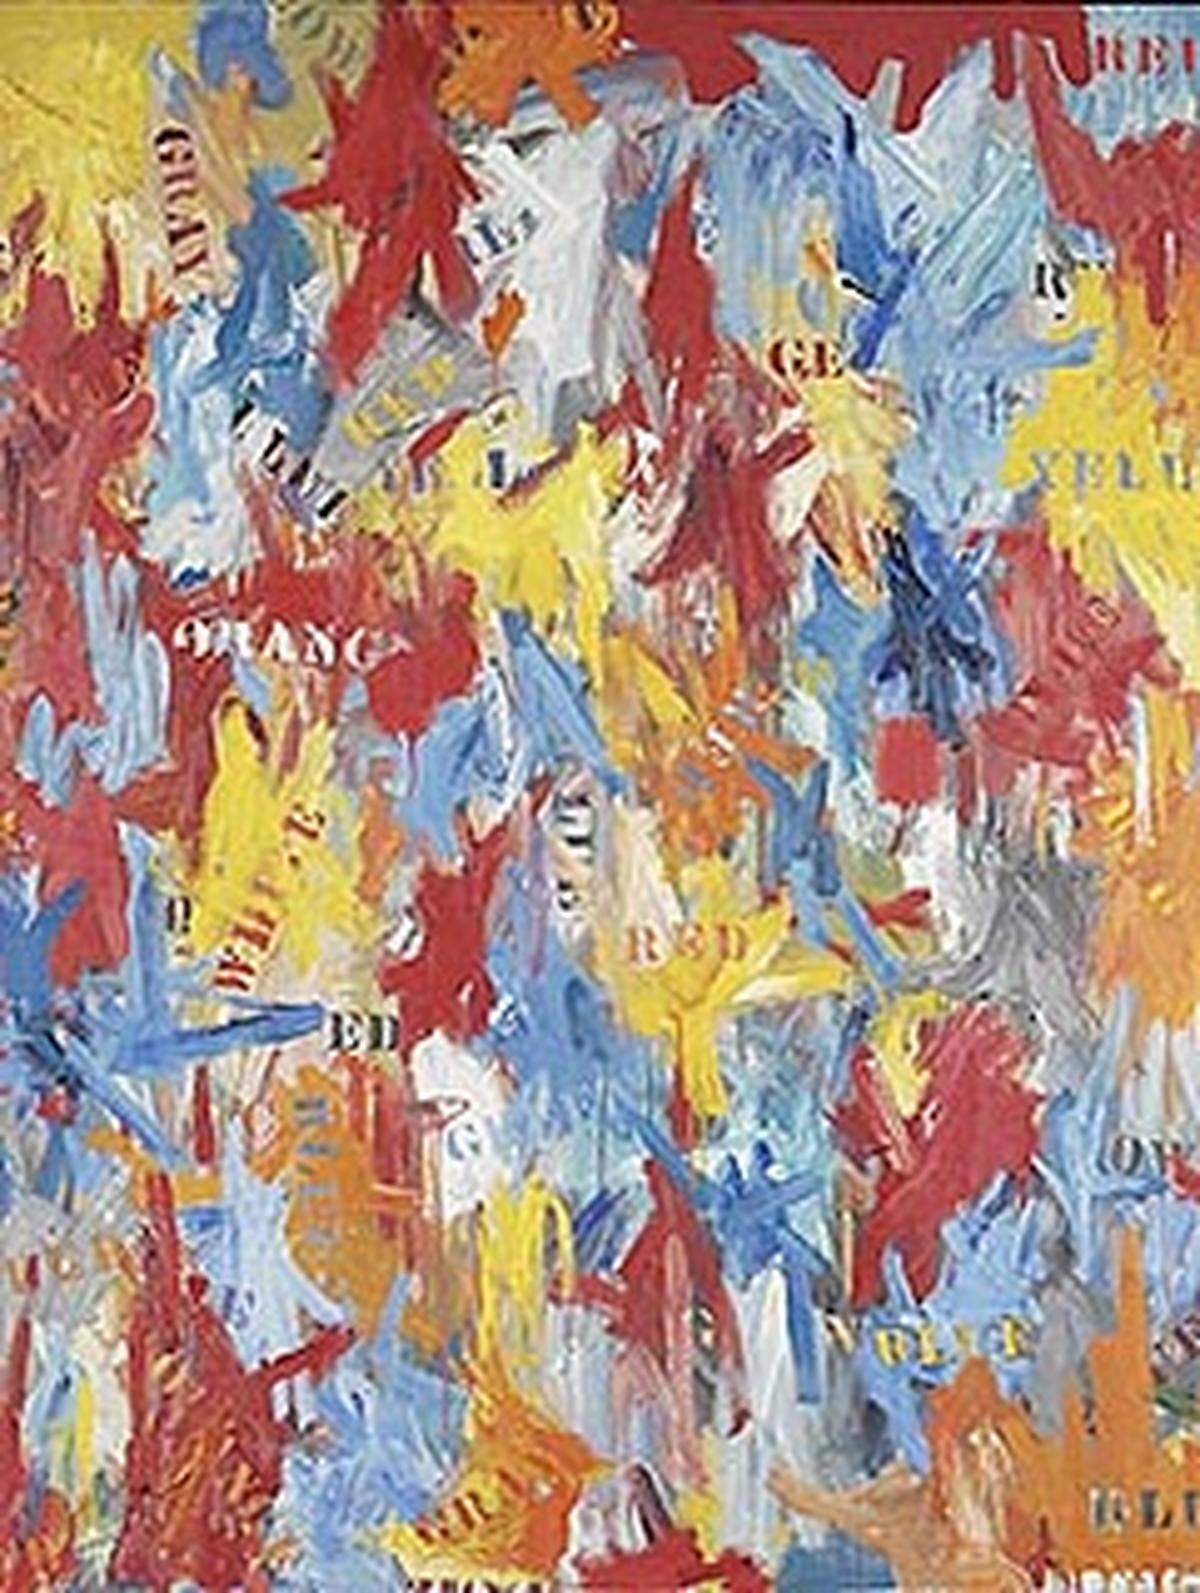 Das Werk des 1930 in Georgia, USA, geborenen Jasper Johns wurde für 80 Millionen Dollar verkauft. Es ist die zweithöchste Summe, die jemals für das Bild eines zeitgenössischen Künstlers bezahlt wurde. In der Gesamtwertung der teuersten Gemälde liegt es an neunter Stelle.